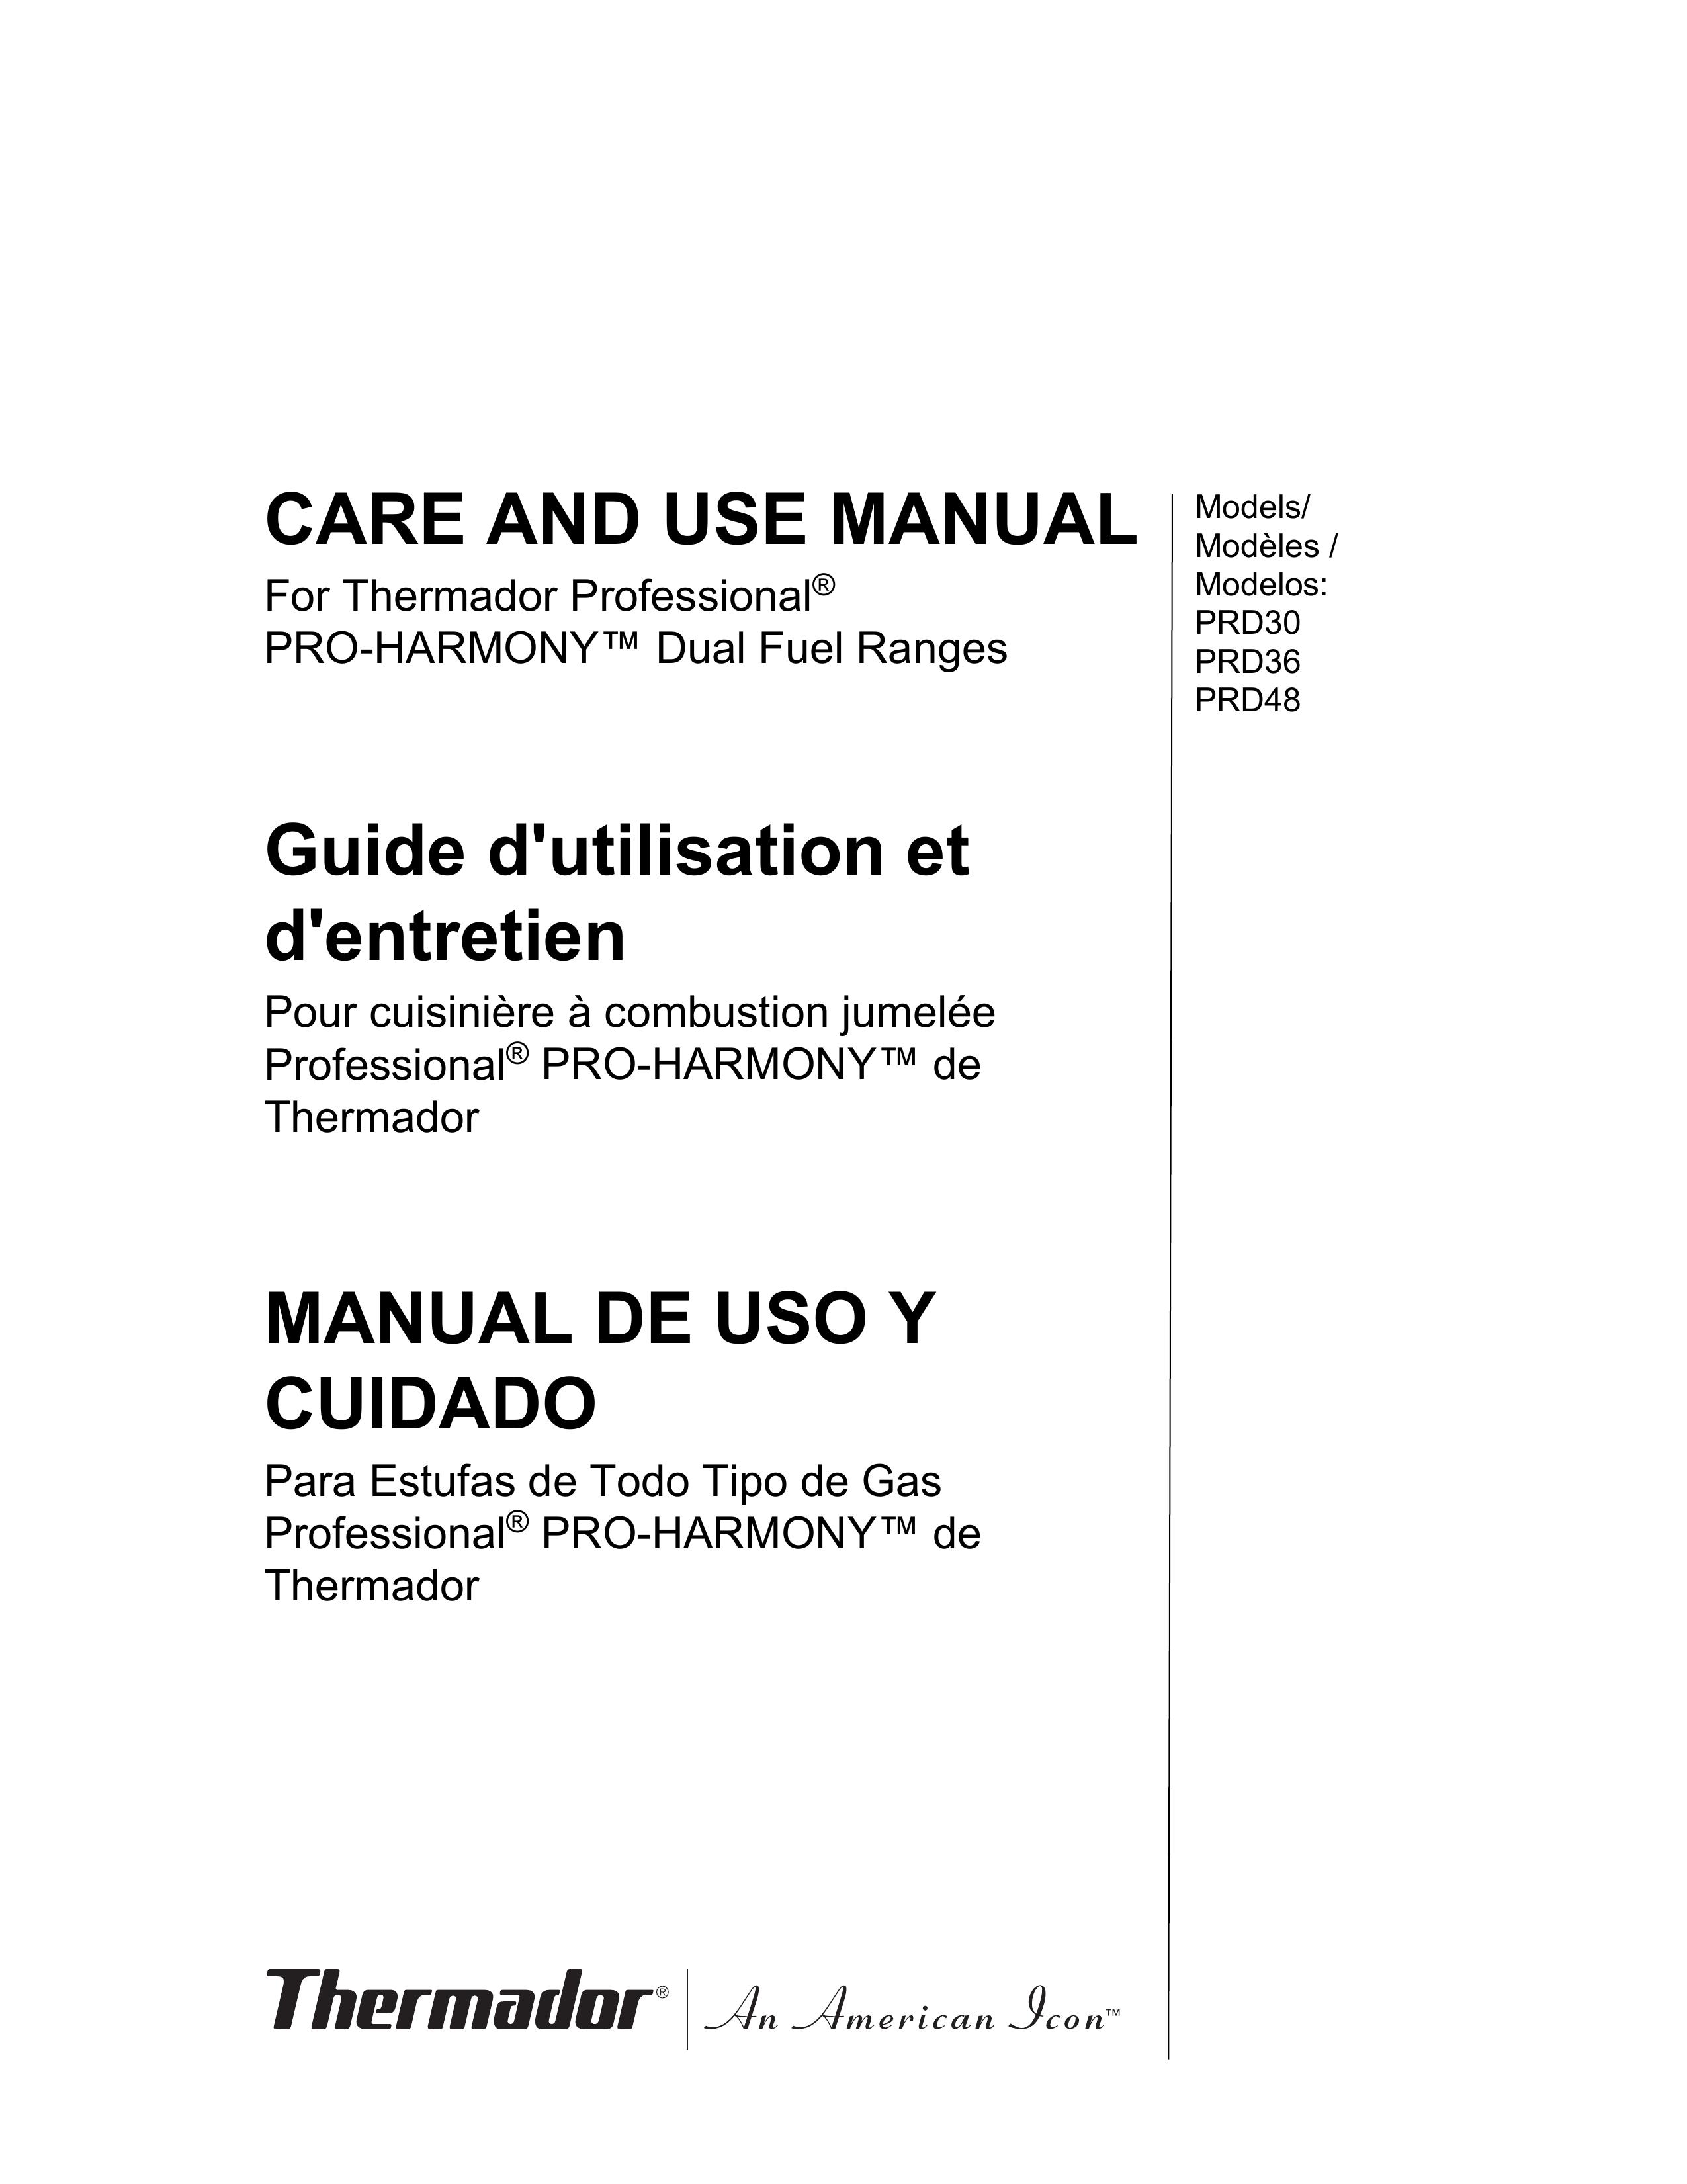 Thermador PRD48 Range User Manual